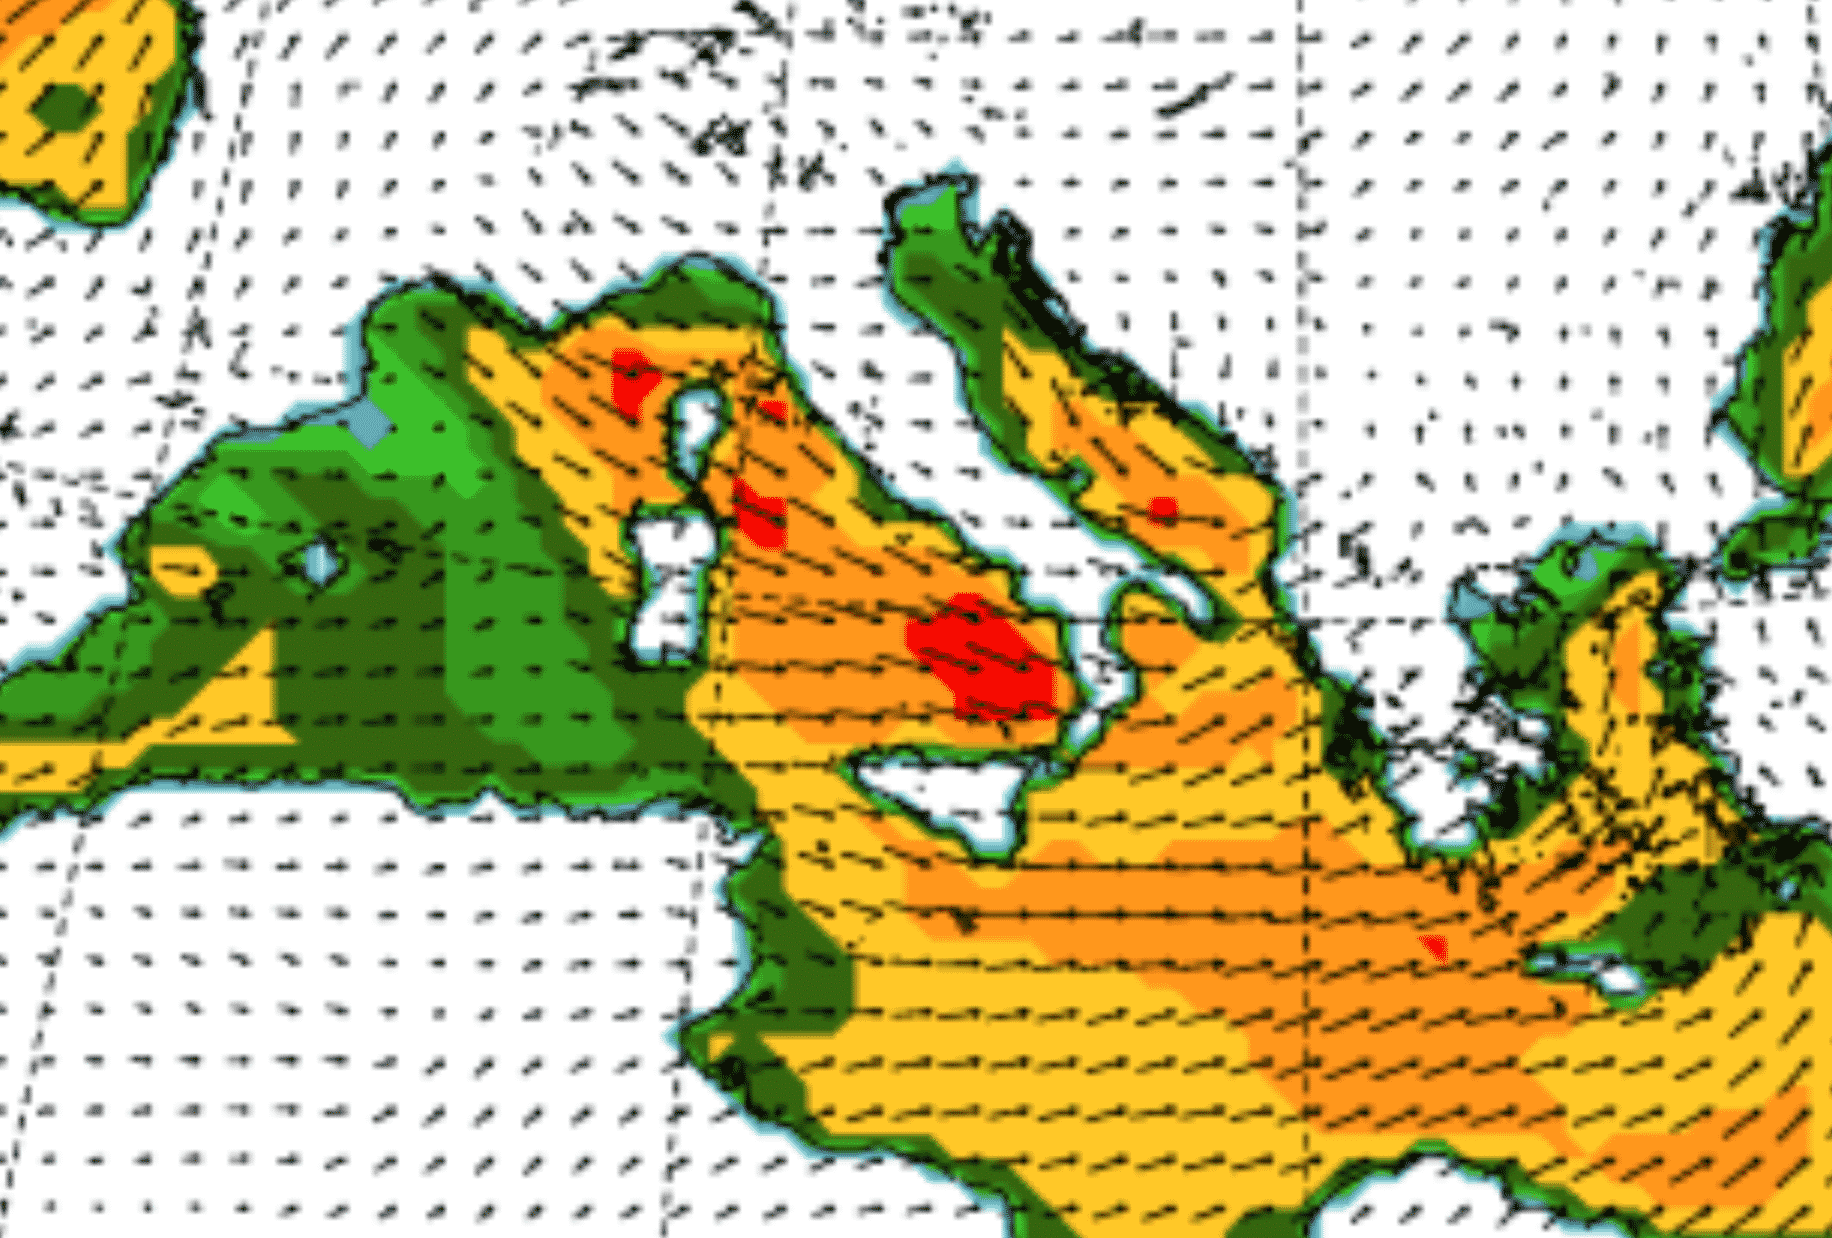 Meteo Sicilia, le previsioni di oggi tra instabilità e freddo: venti di burrasca fino a 75 km/h